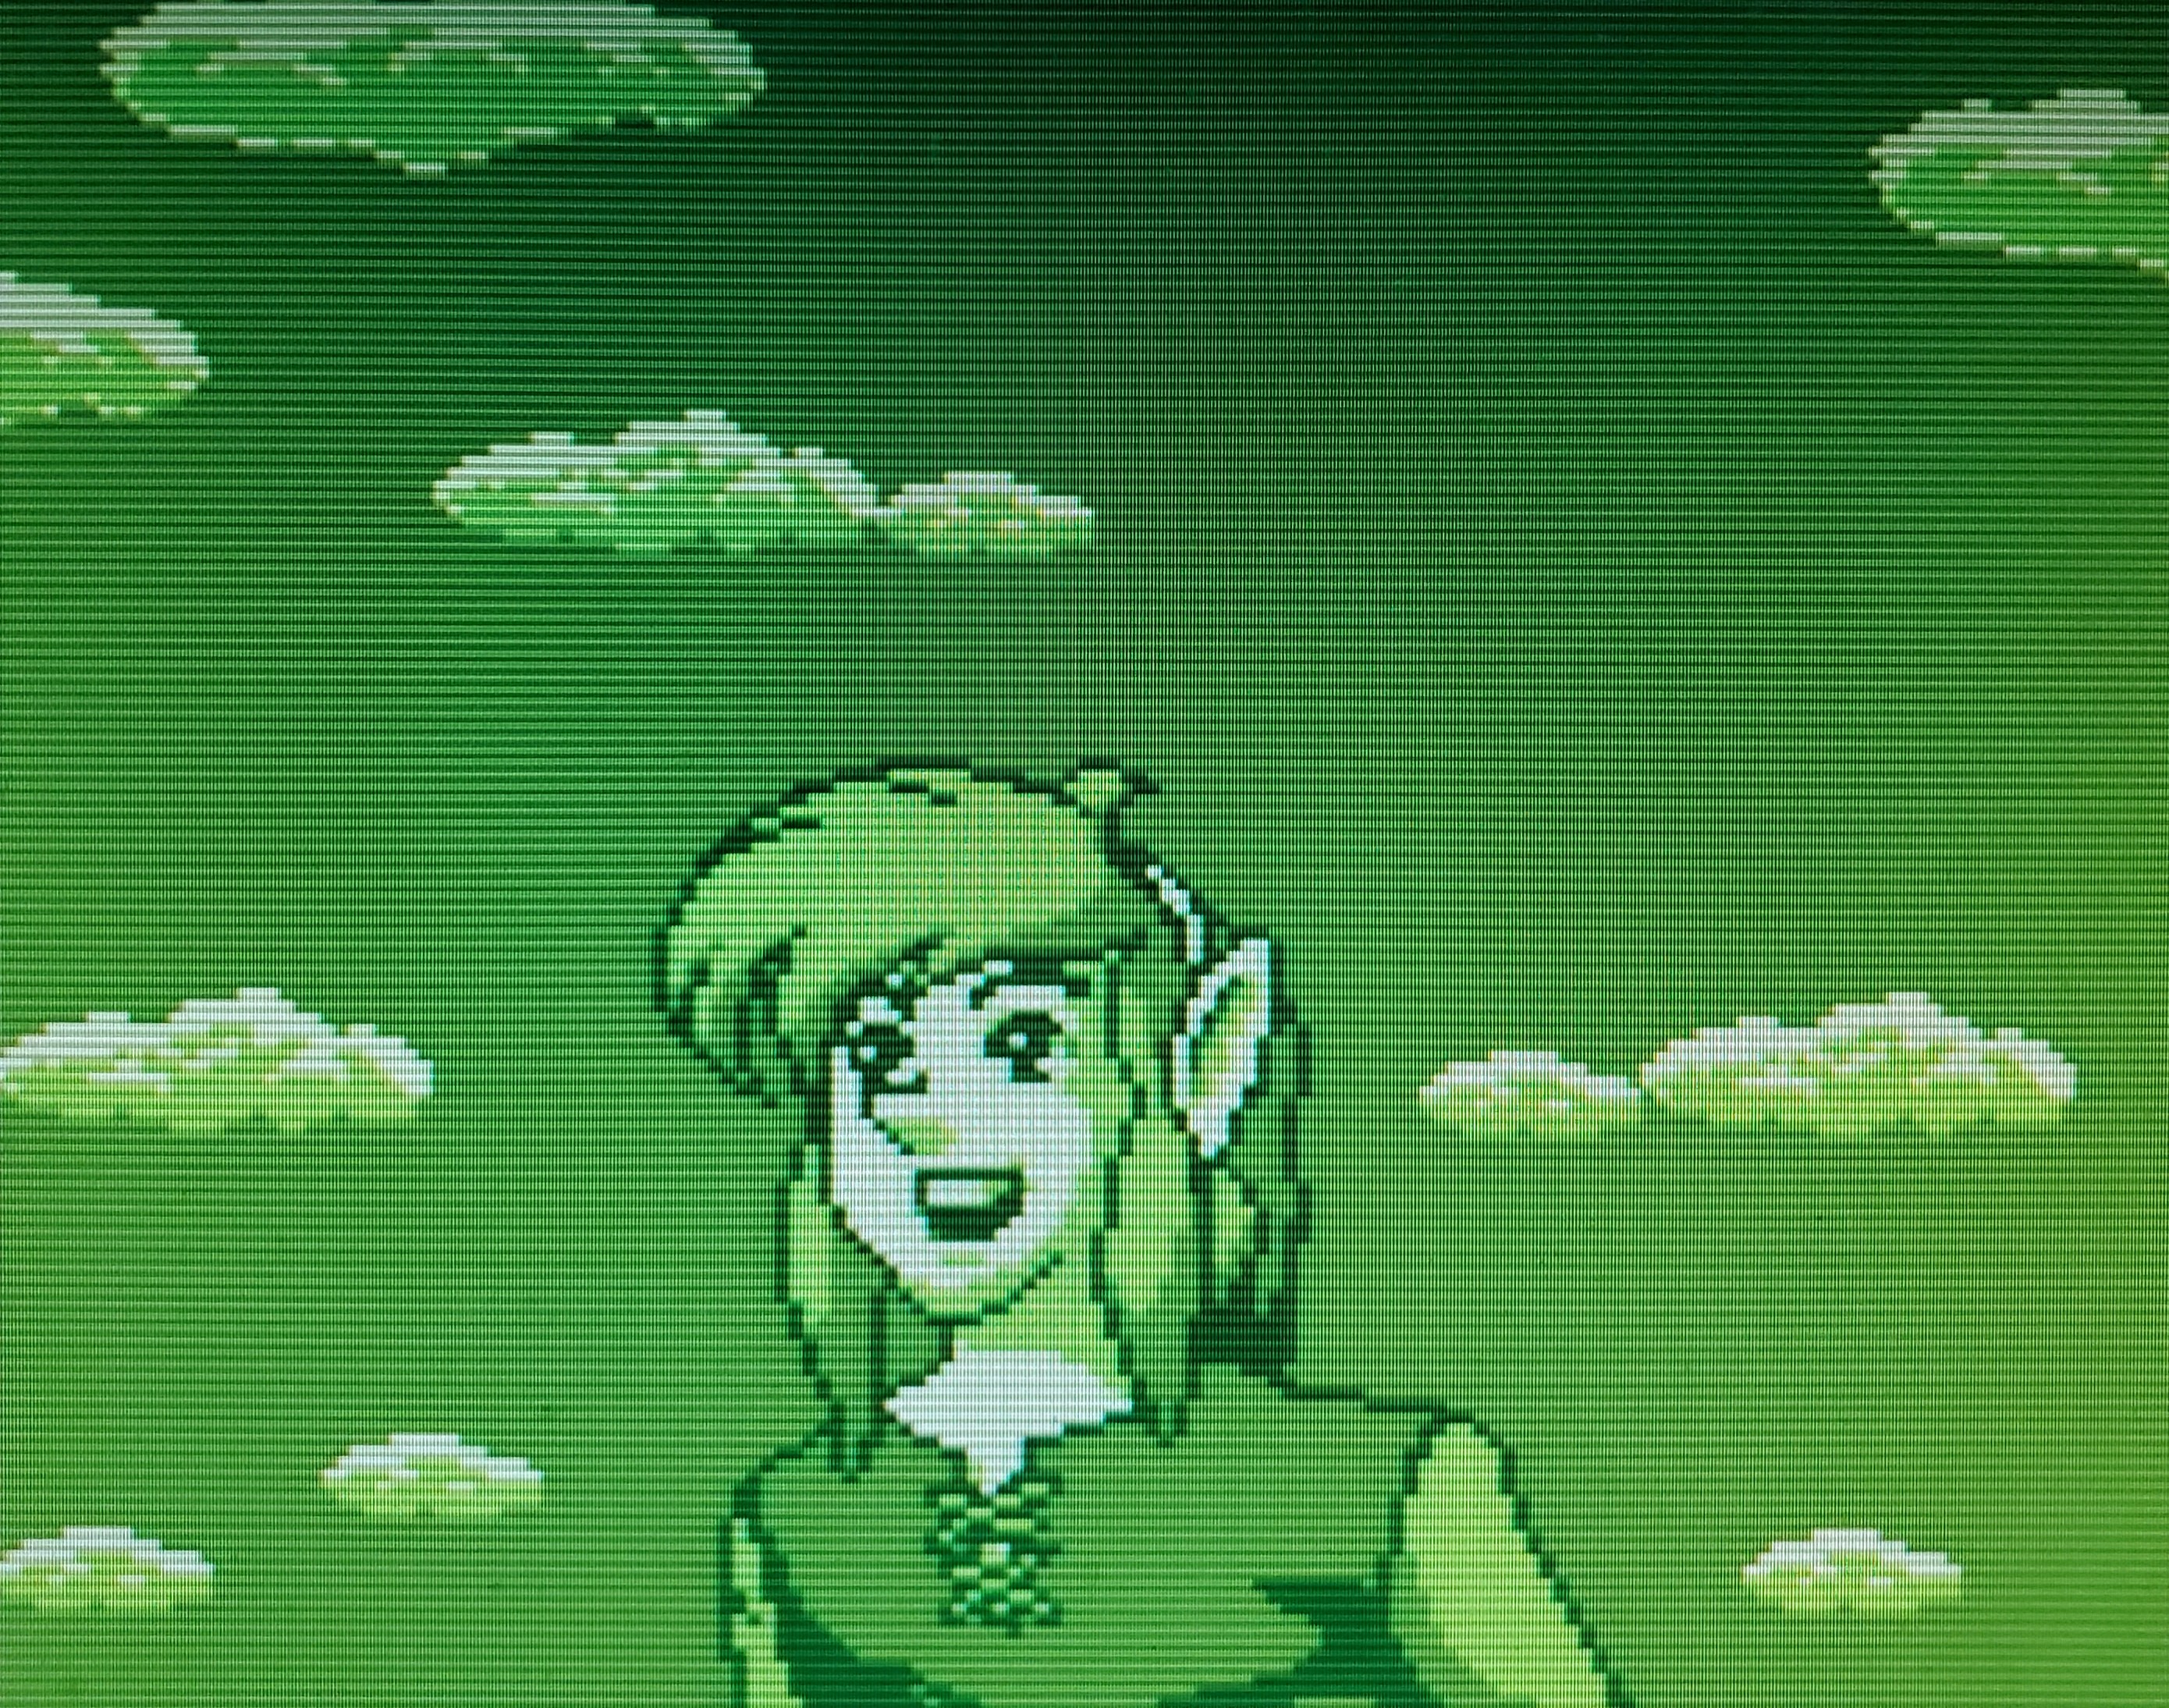 Nintendo Player's Guide (GB) Legend of Zelda, The Link's Awakening